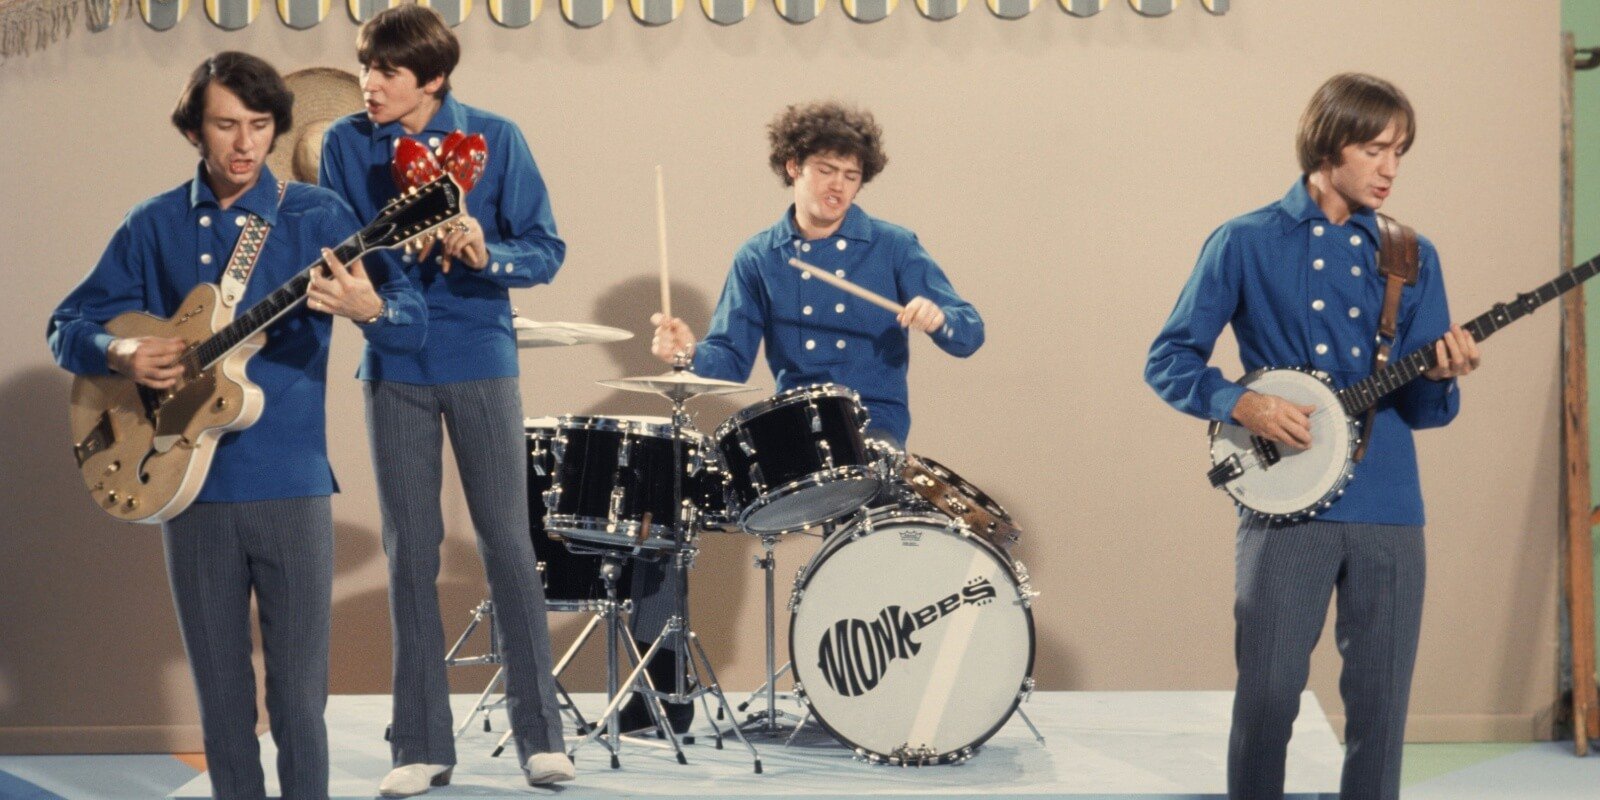 Питер Торк сказал, что Monkees «никогда не репетировали» до того, как пригласили телекомпанию танцевать